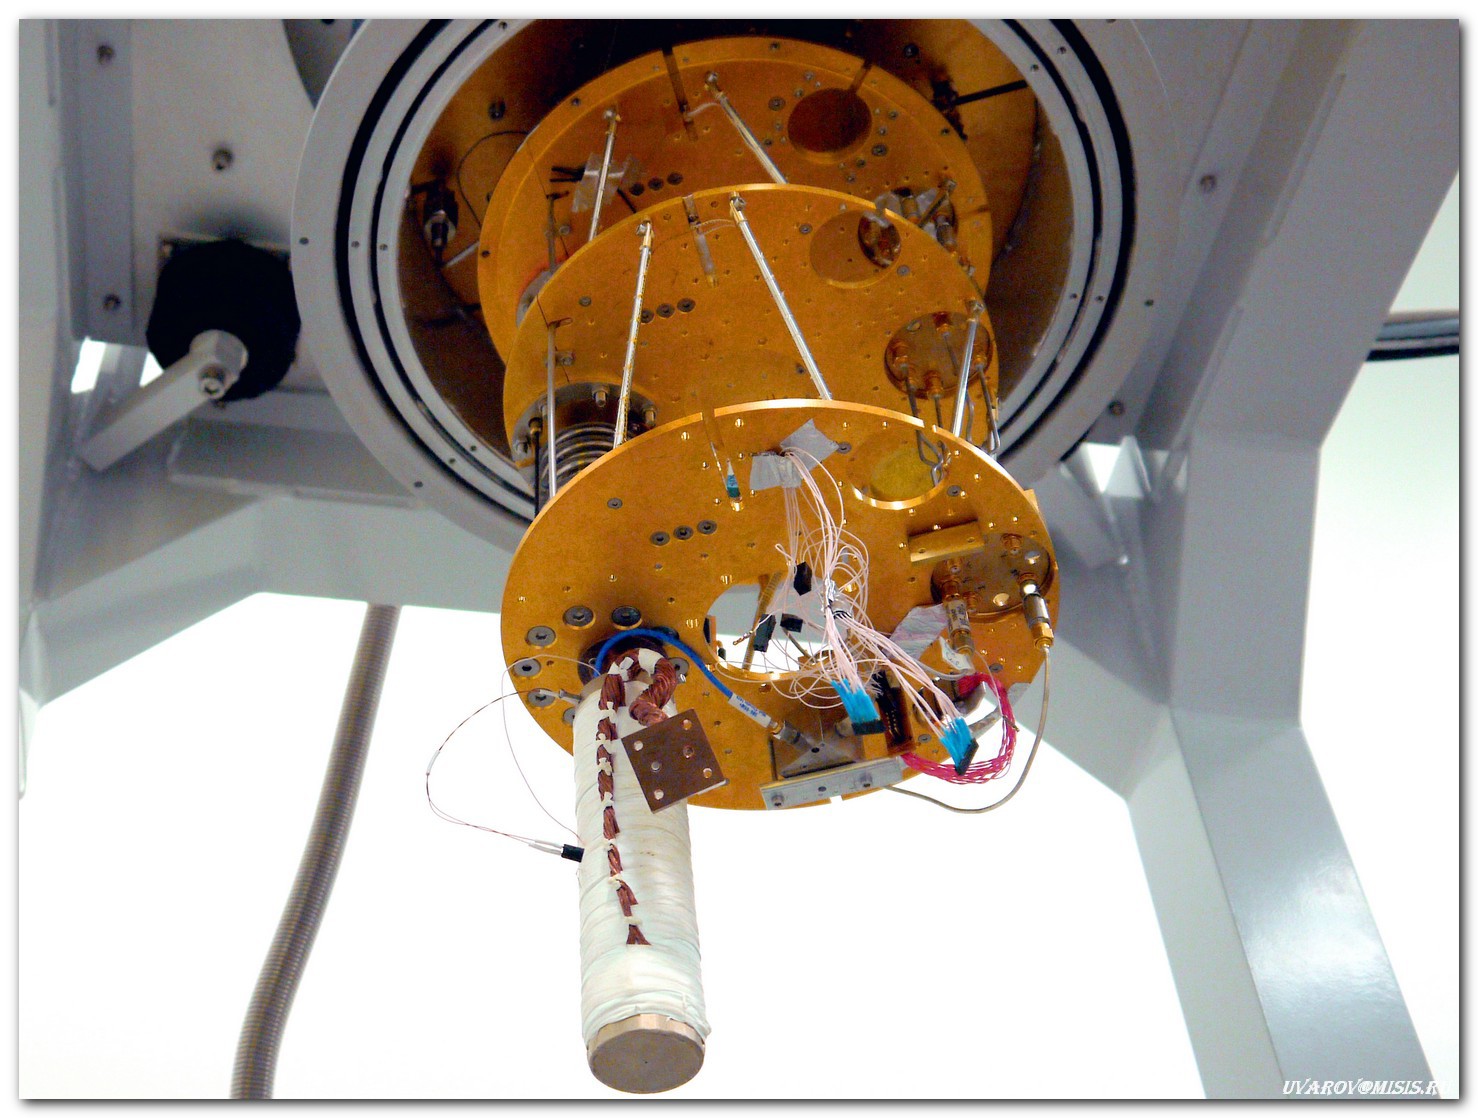 Лаборатории НИТУ «МИСиС»: от разделения наночастиц магнетита до создания квантового компьютера - 21